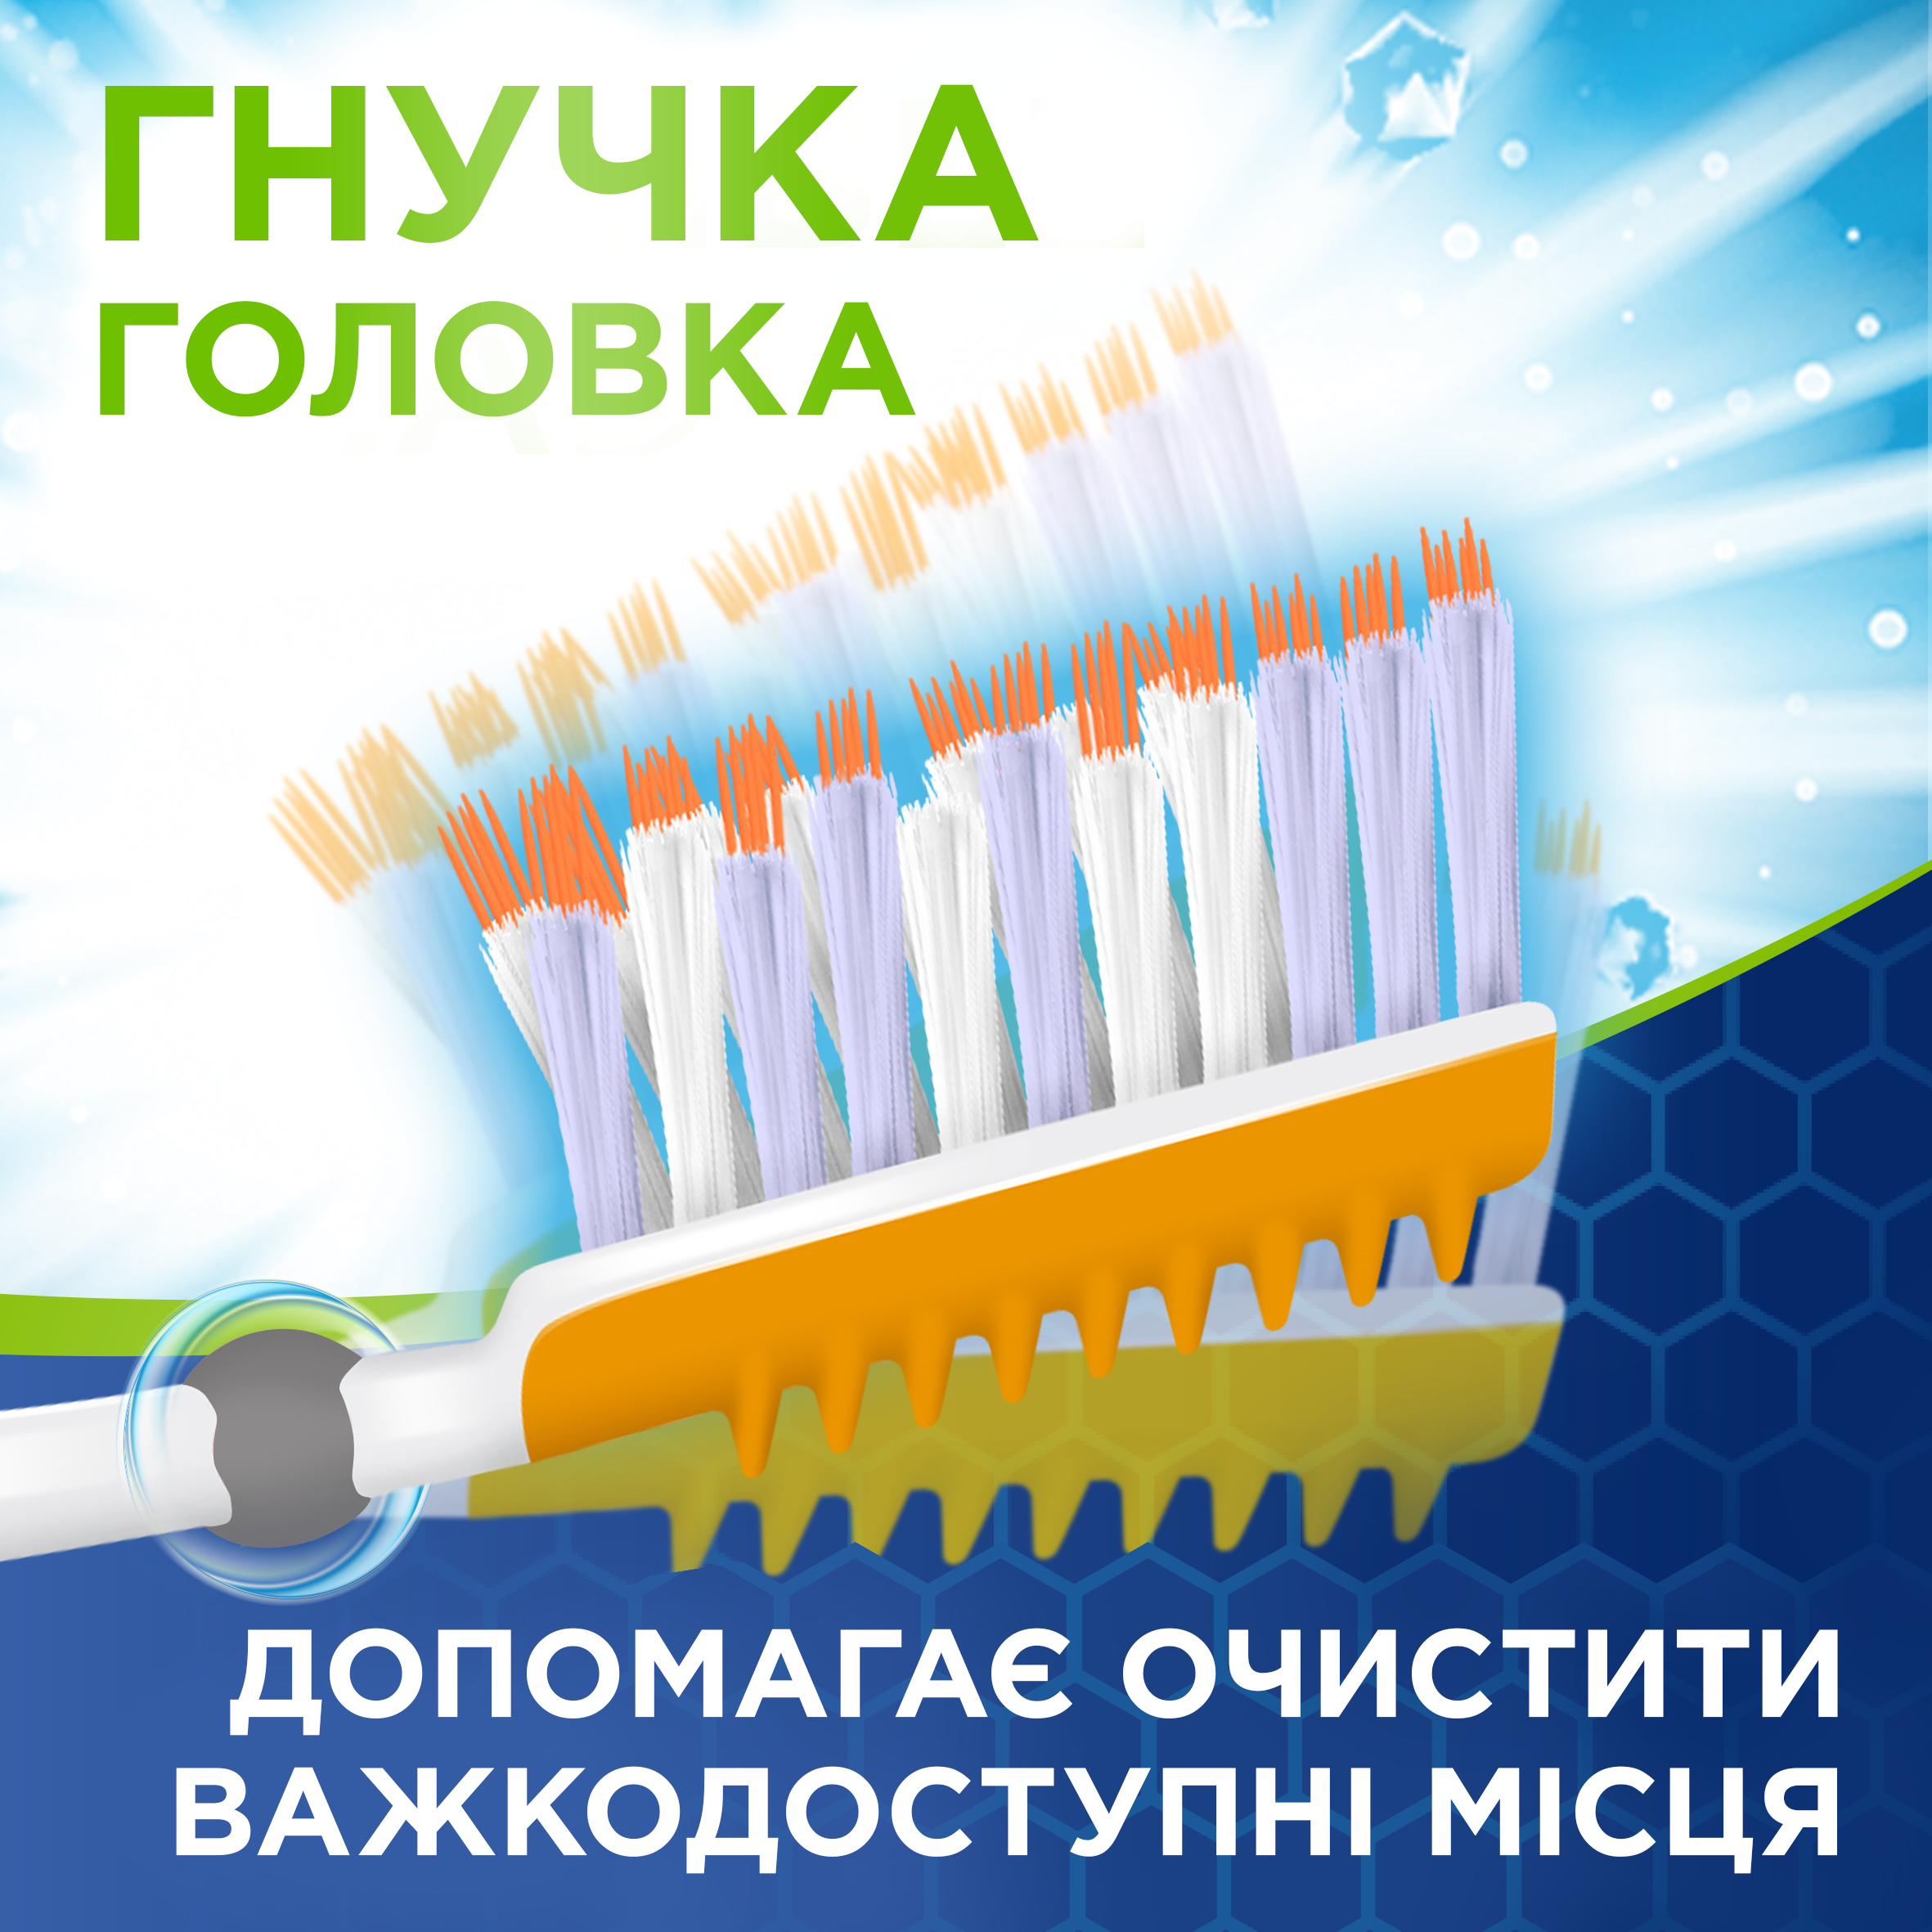 Зубна щітка Aquafresh Extreme Clean Medium 1+1, середня, в ассортименті, 2 шт. - фото 12